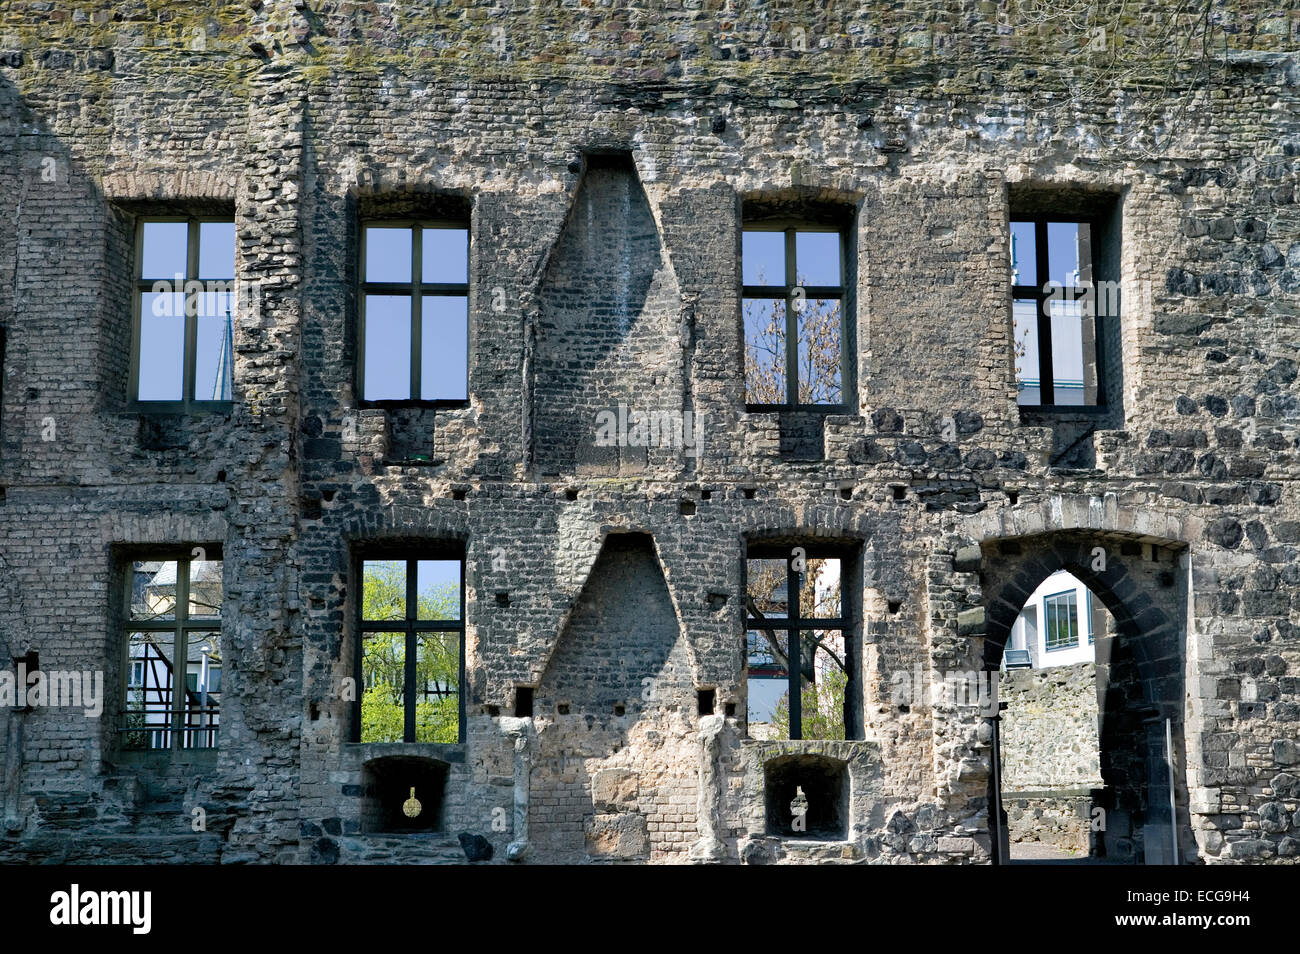 Old city ramparts in Andernach, Rhineland-Palatinate, Germany, Europe, alte Stadtbefestigungen in Andernach, Deutschland Stock Photo